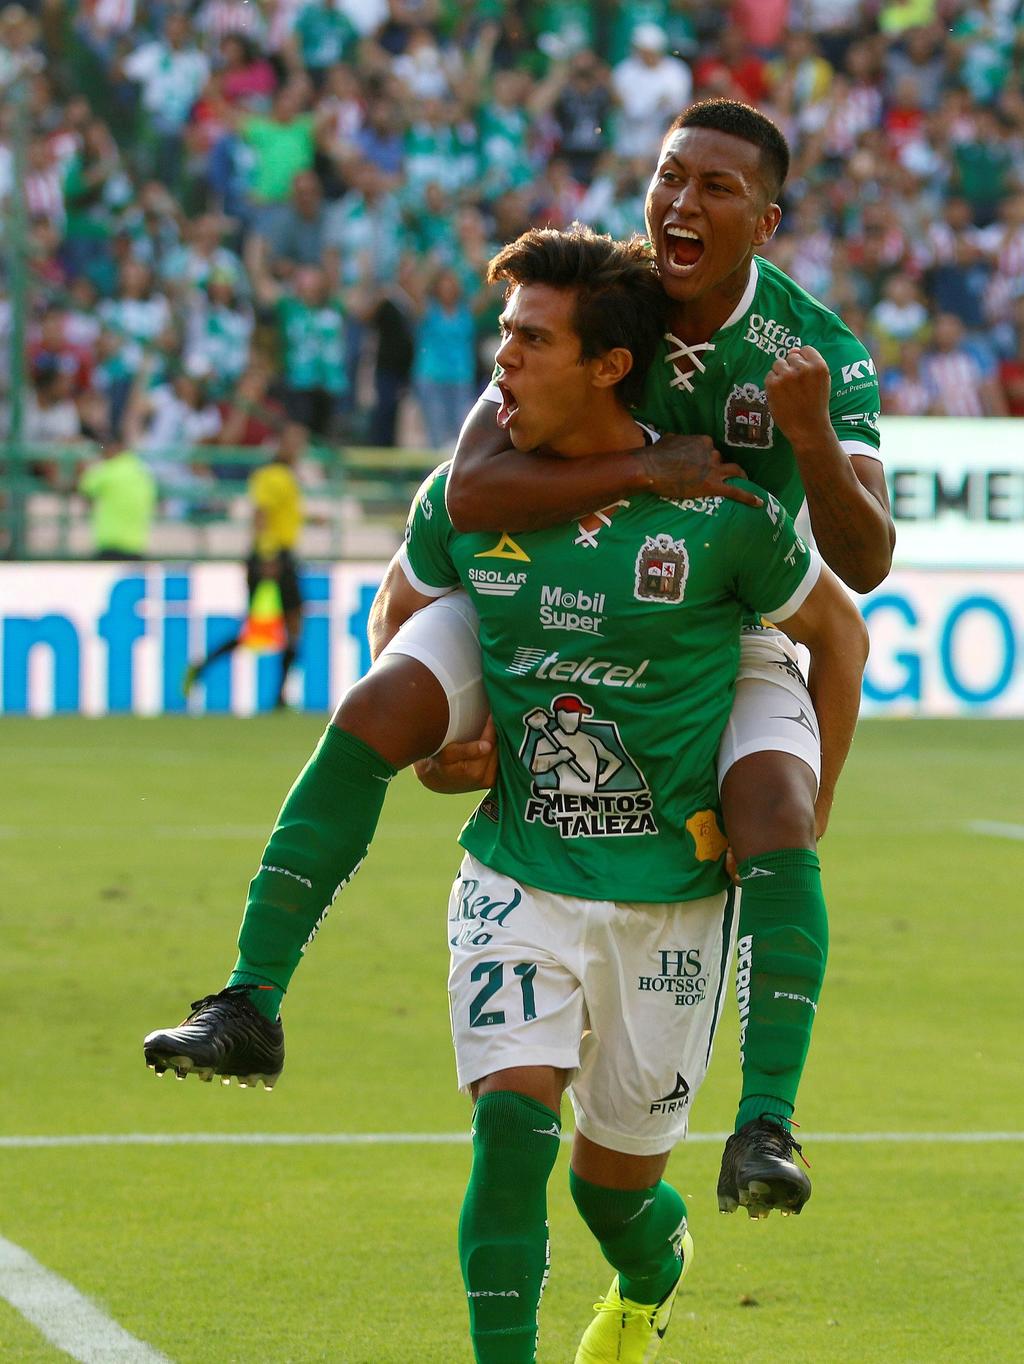 El juvenil delantero mexicano (21) marcó dos goles en el duelo, para sumar en su cuenta personal tres dianas en el actual Apertura 2019. (EFE)